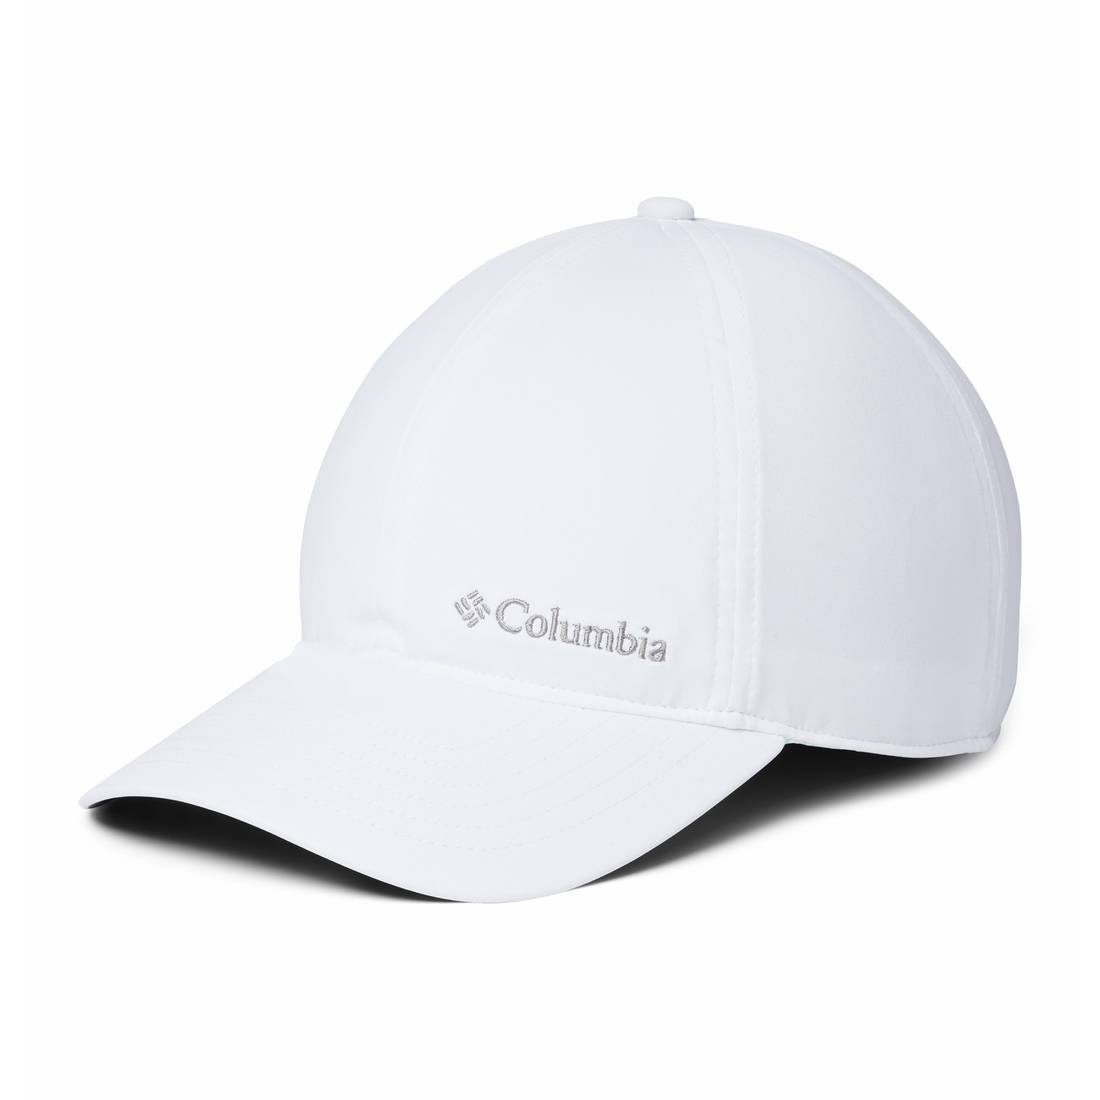 Produktbild von Columbia Coolhead II Ball Cap - Weiß